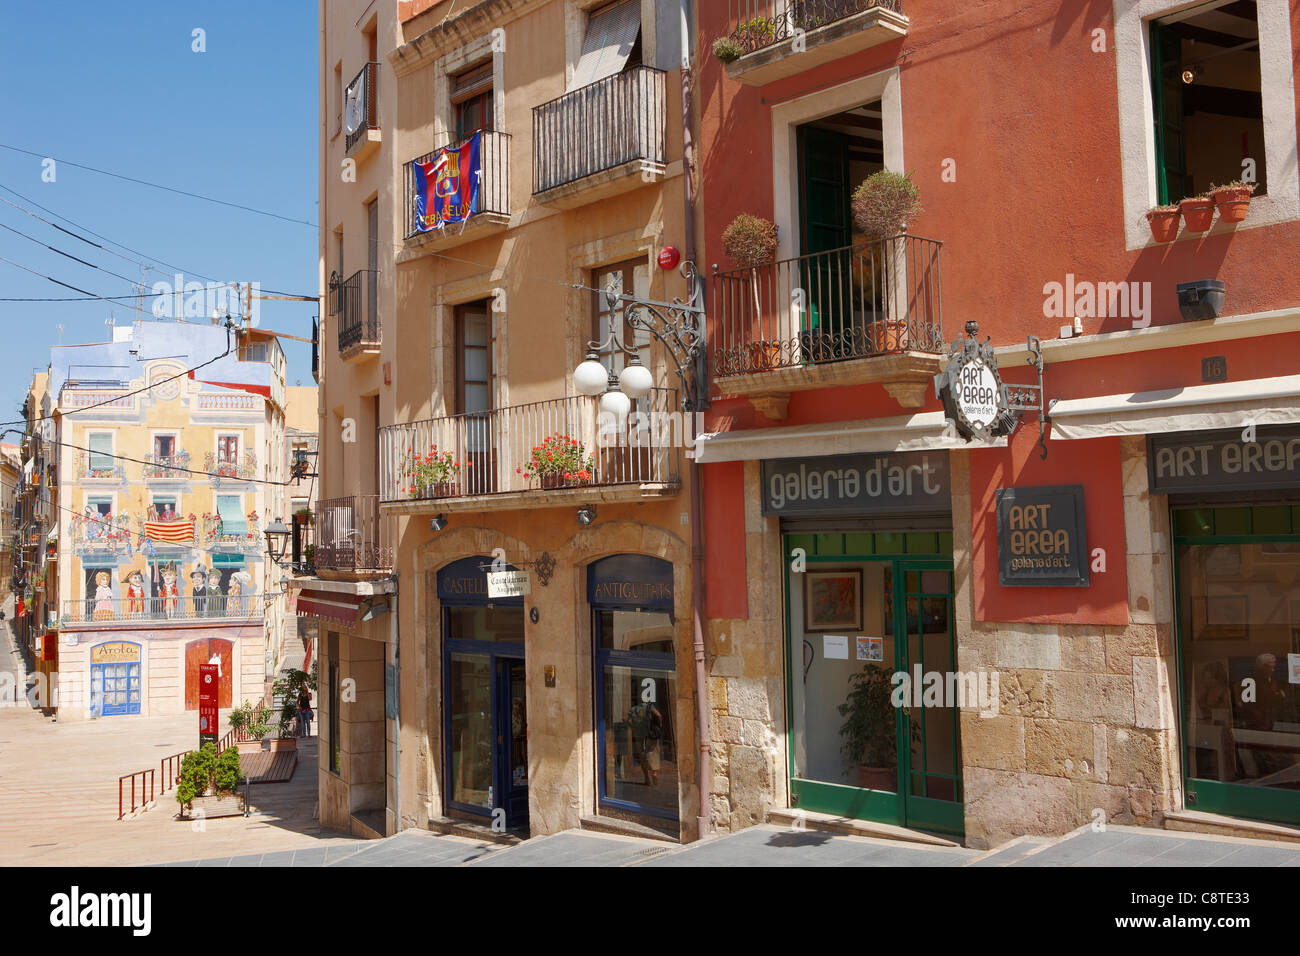 Le variopinte facciate di edifici nel centro storico della città. Tarragona Catalogna. Foto Stock